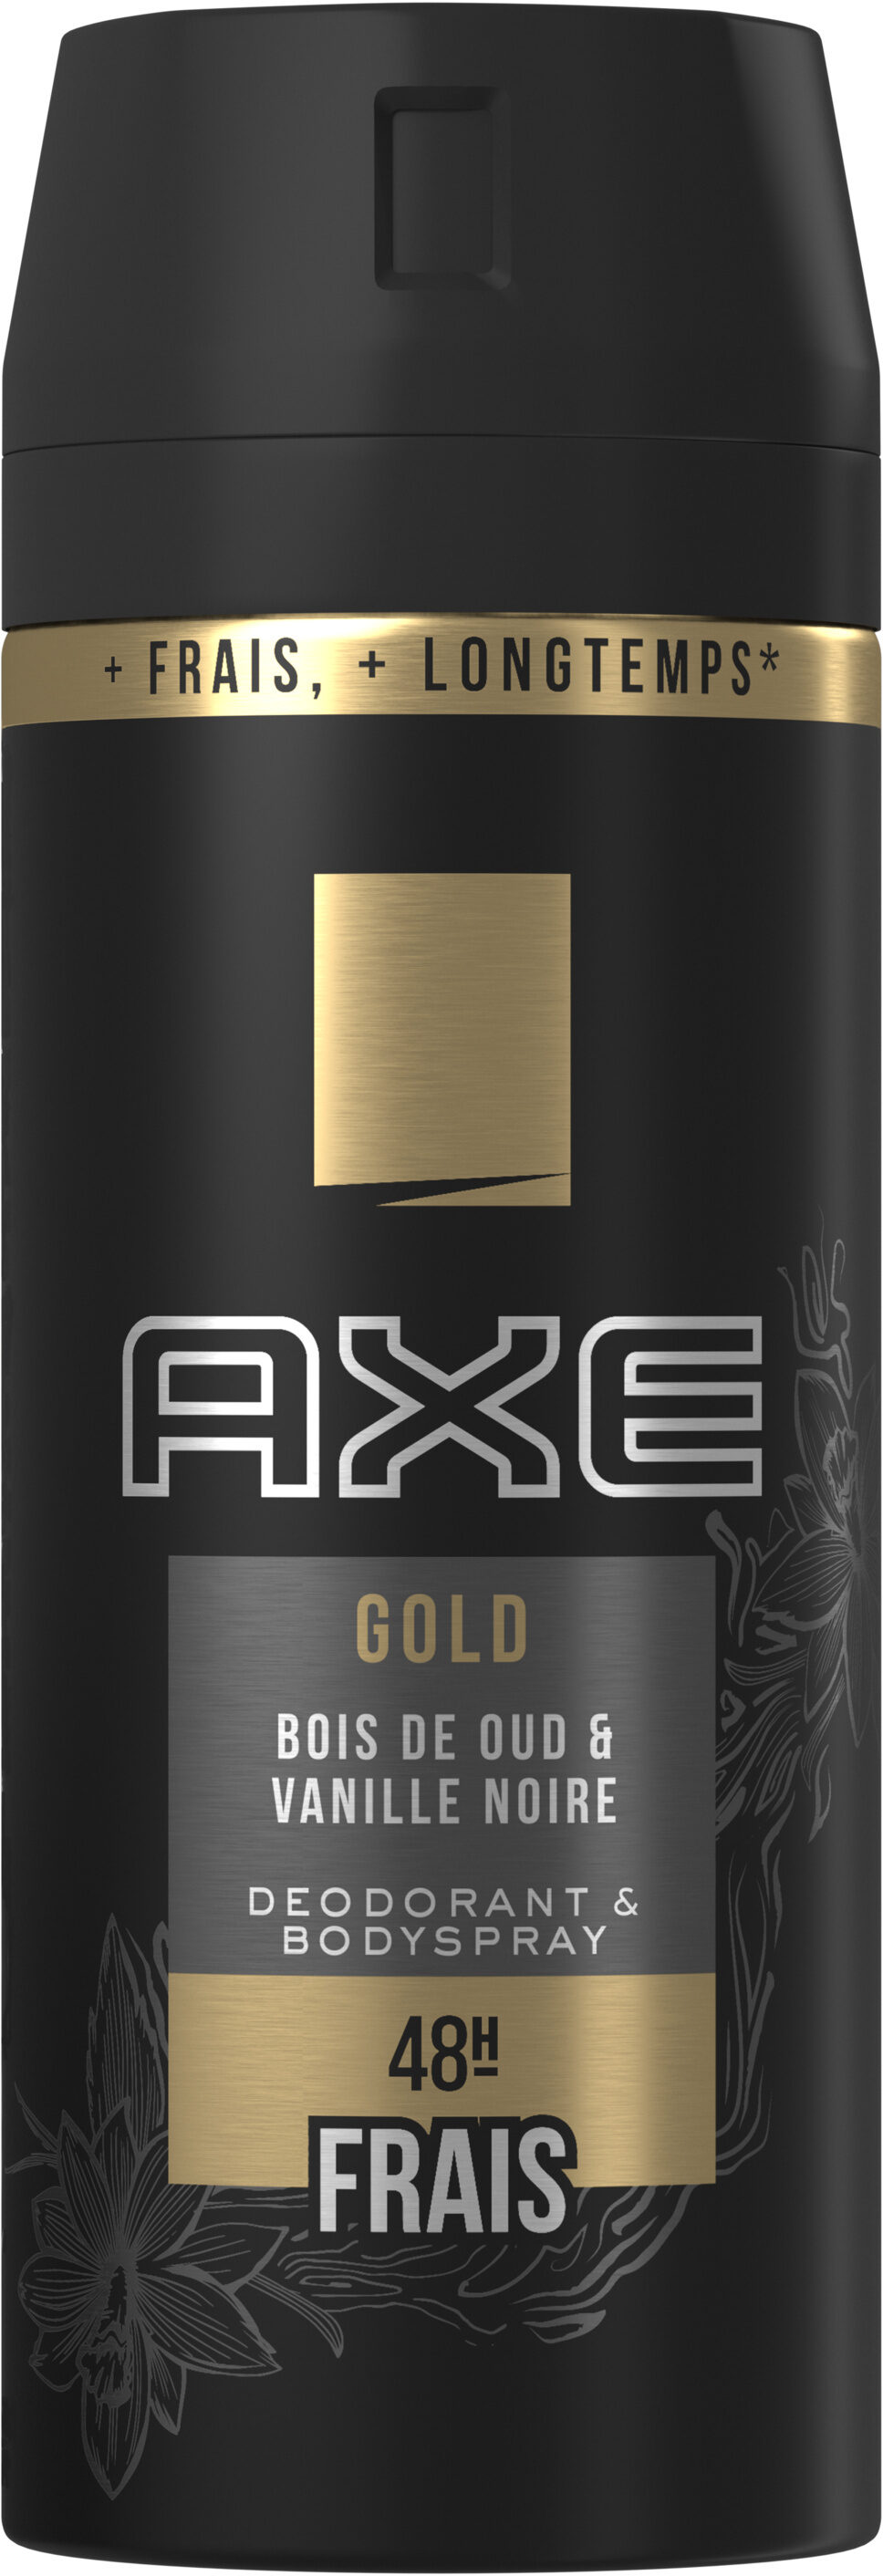 AXE Déodorant Homme Spray Antibactérien Gold - Produit - fr